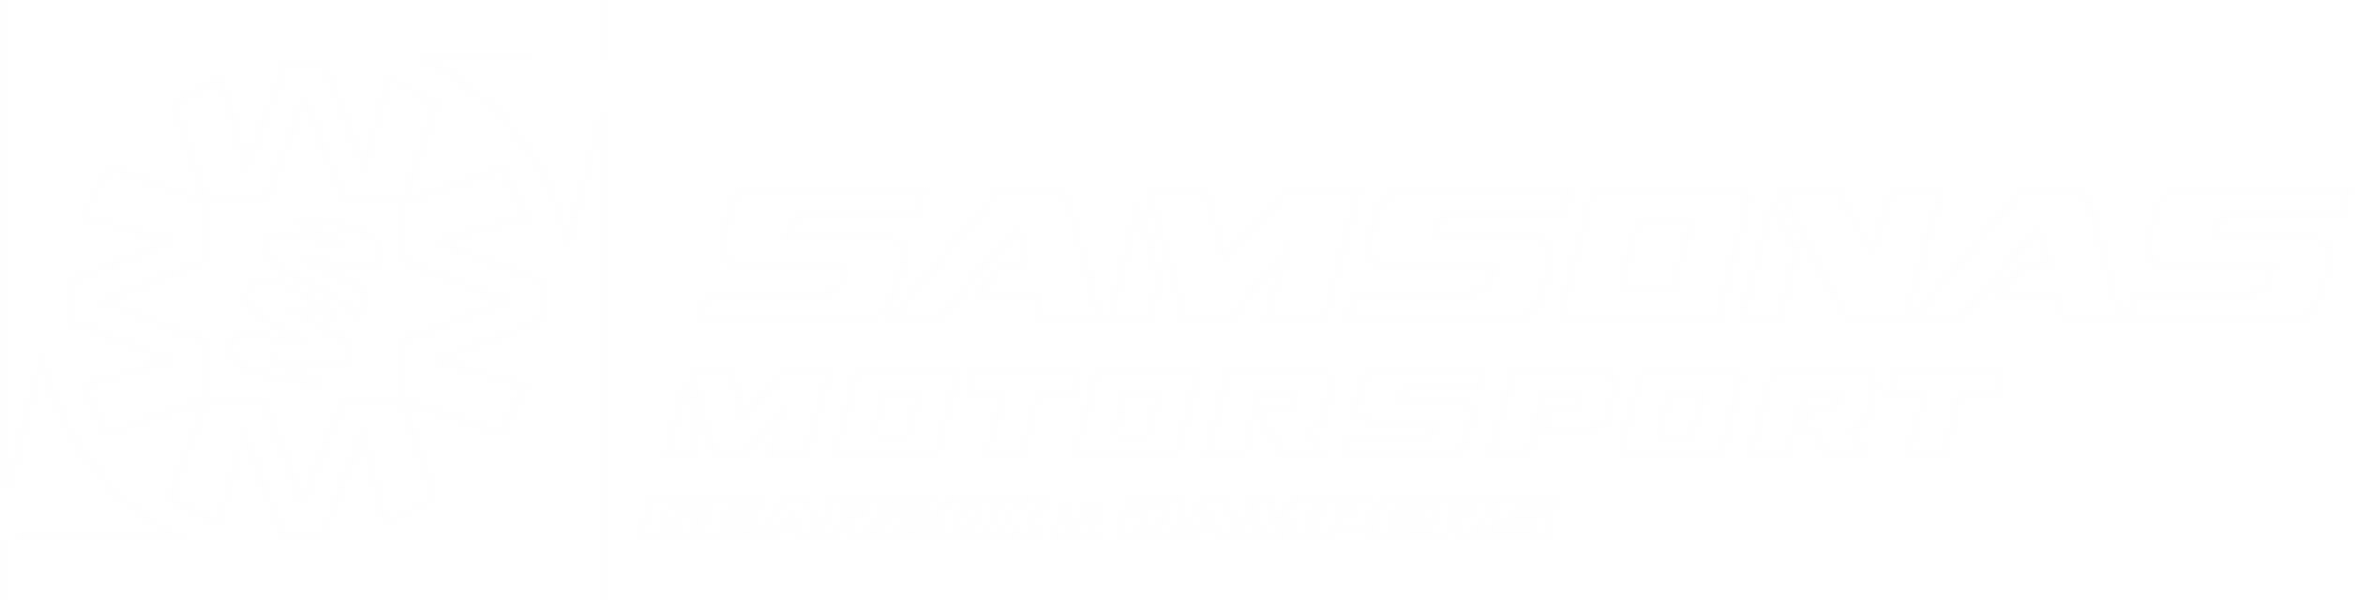 samsonas logo wh